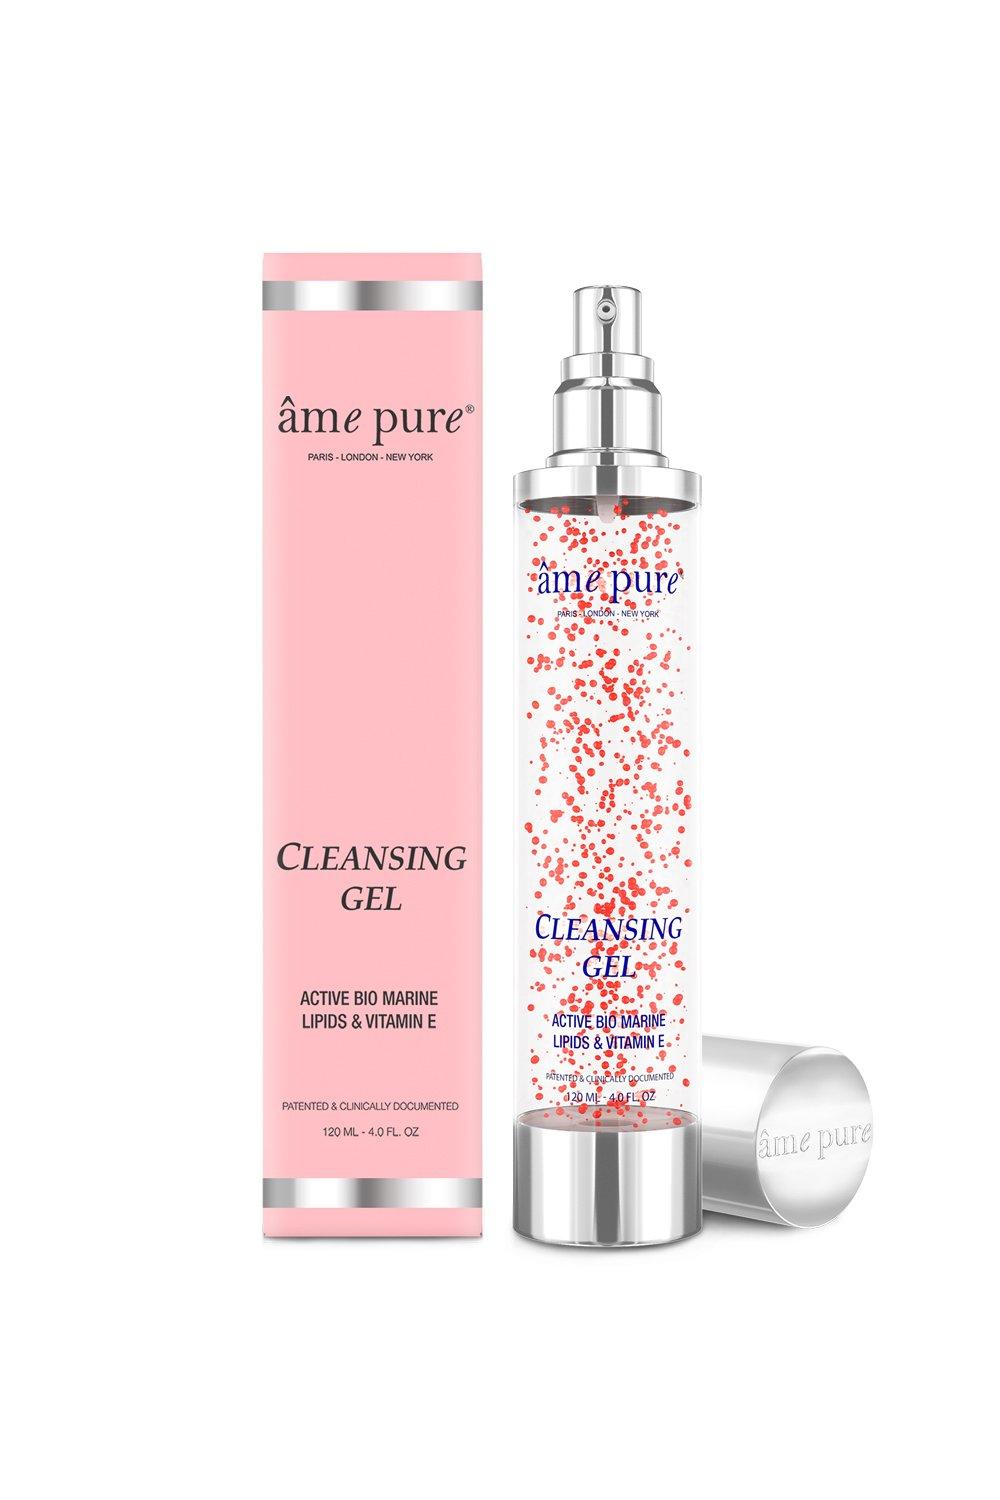 âme pure  Cleansing Gel - Reinigungsgel mit Vitami E/ bekämpft Hautunreinheiten, vergrößerte Poren, stimuliert die Kollagenproduktion 